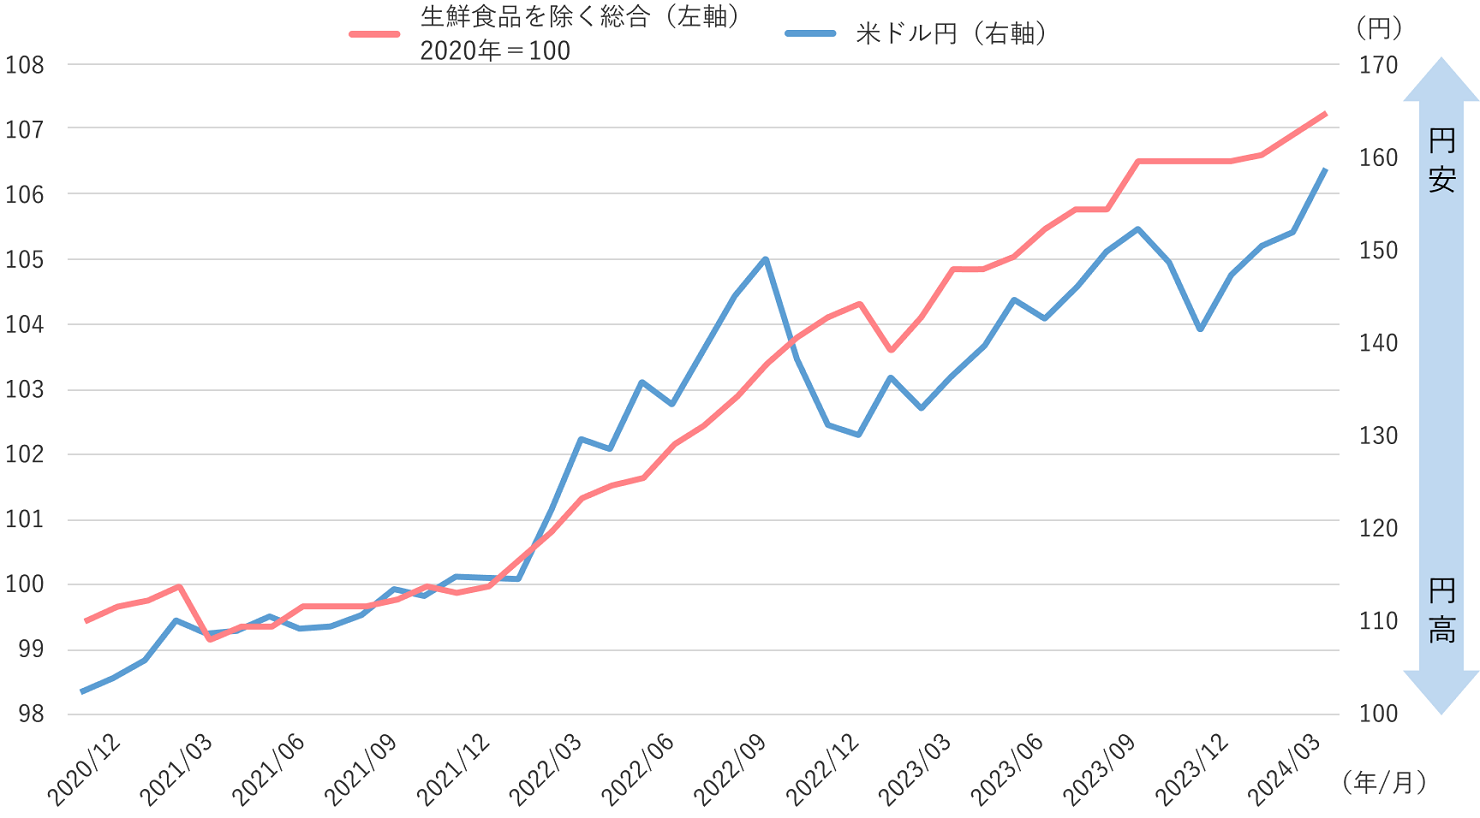 米ドル/円レートと消費者物価指数（生鮮食品を除く総合）の推移の図